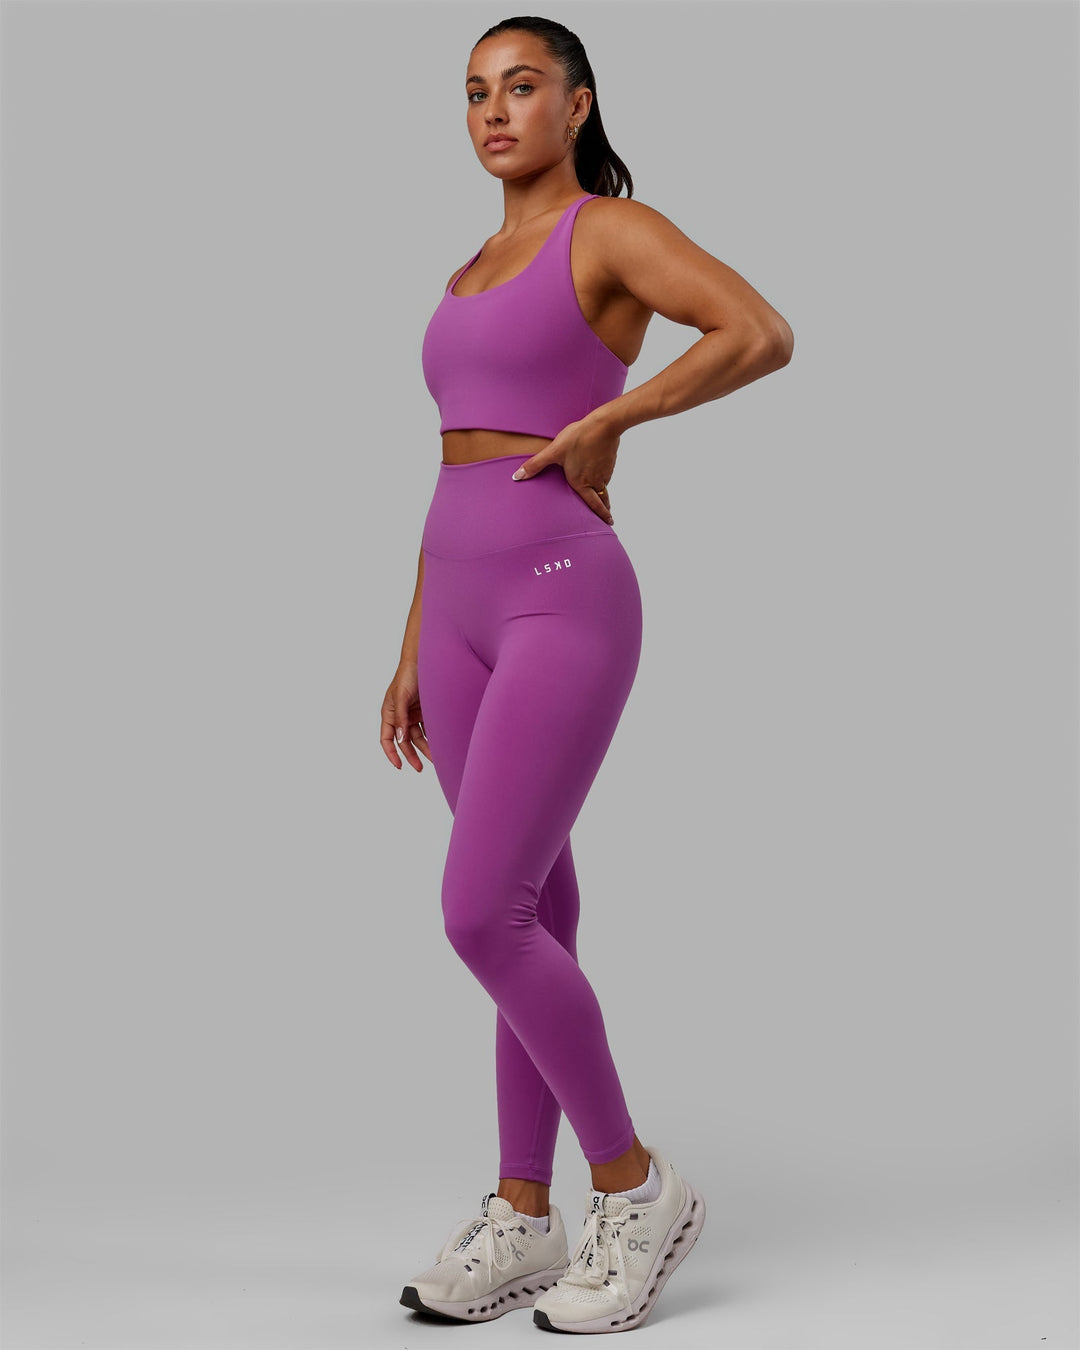 Woman wearing Base 2.0 Full Length Leggings - Hyper Violet